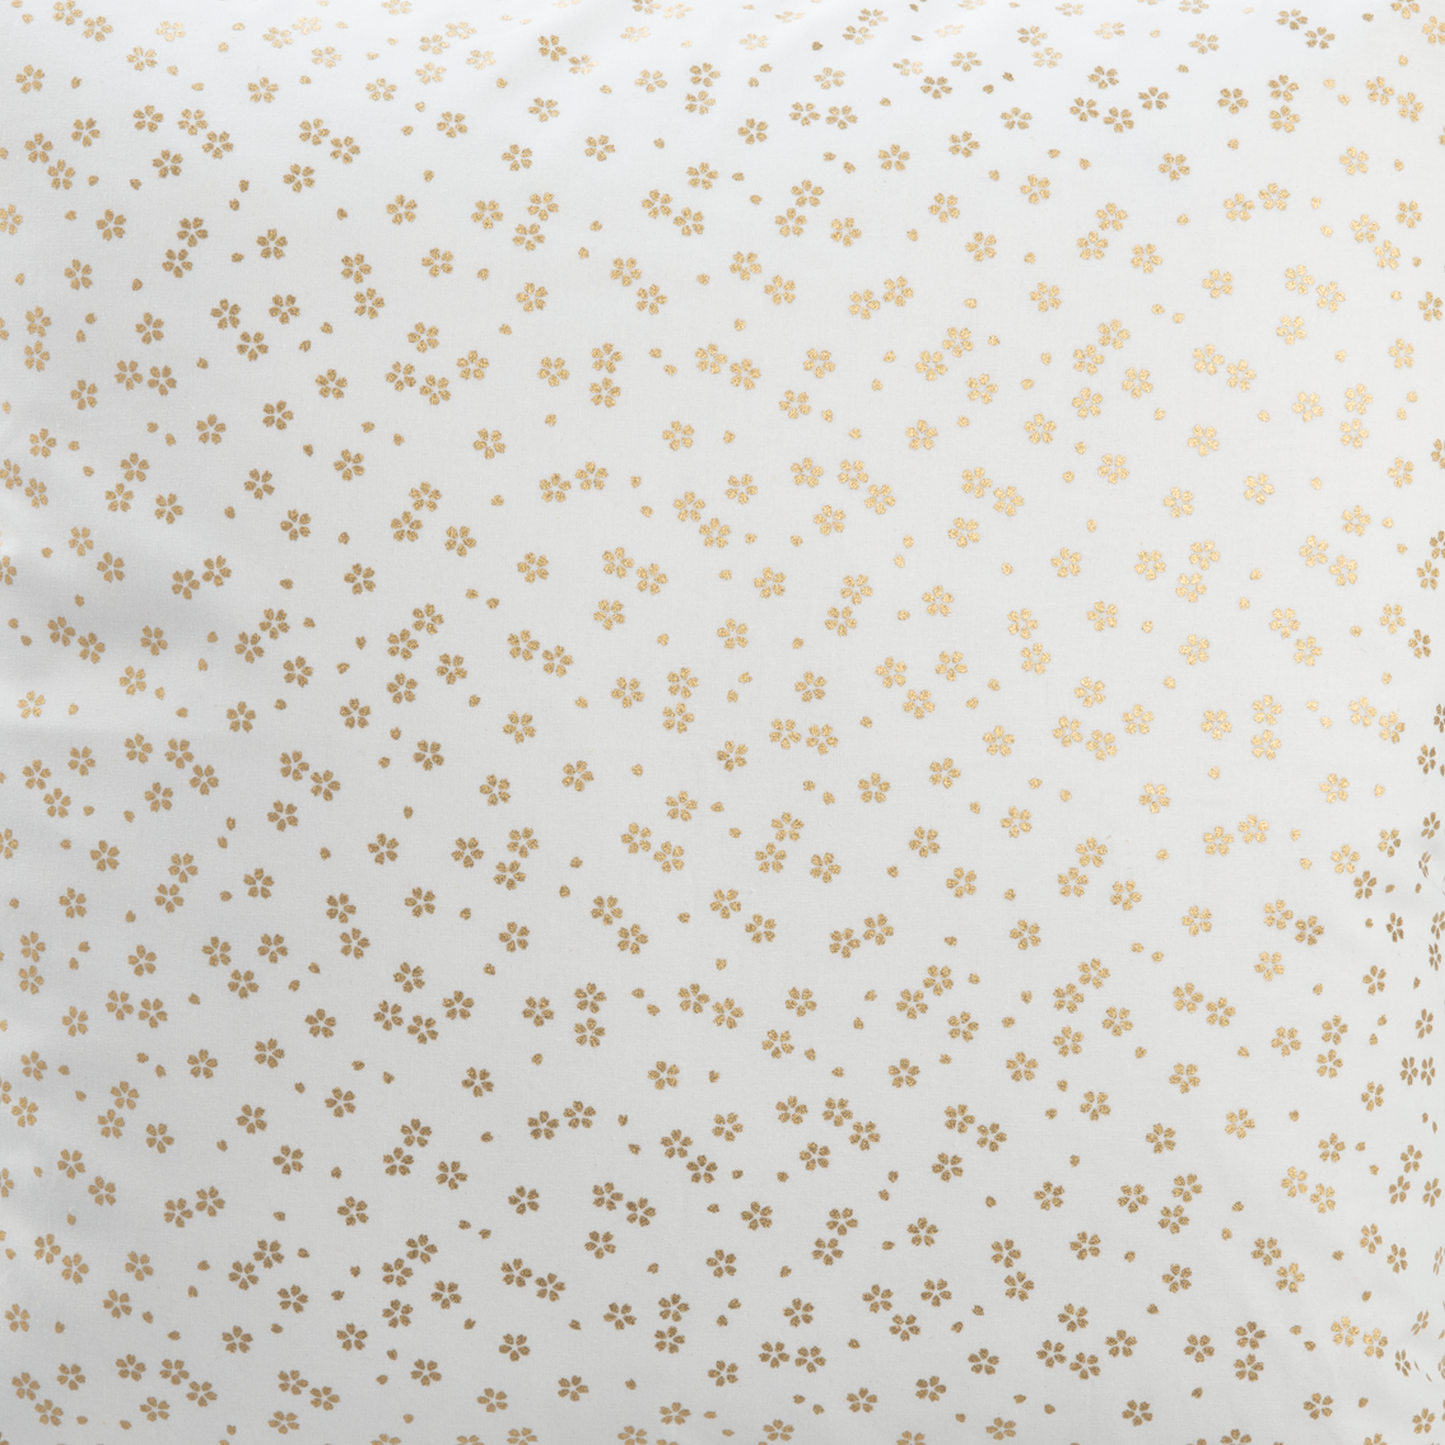 Imported Japanese Fabric - Sakura Gold Sparkle_Fabric_Imported from Japan_100% Cotton_Japanese Sleep System